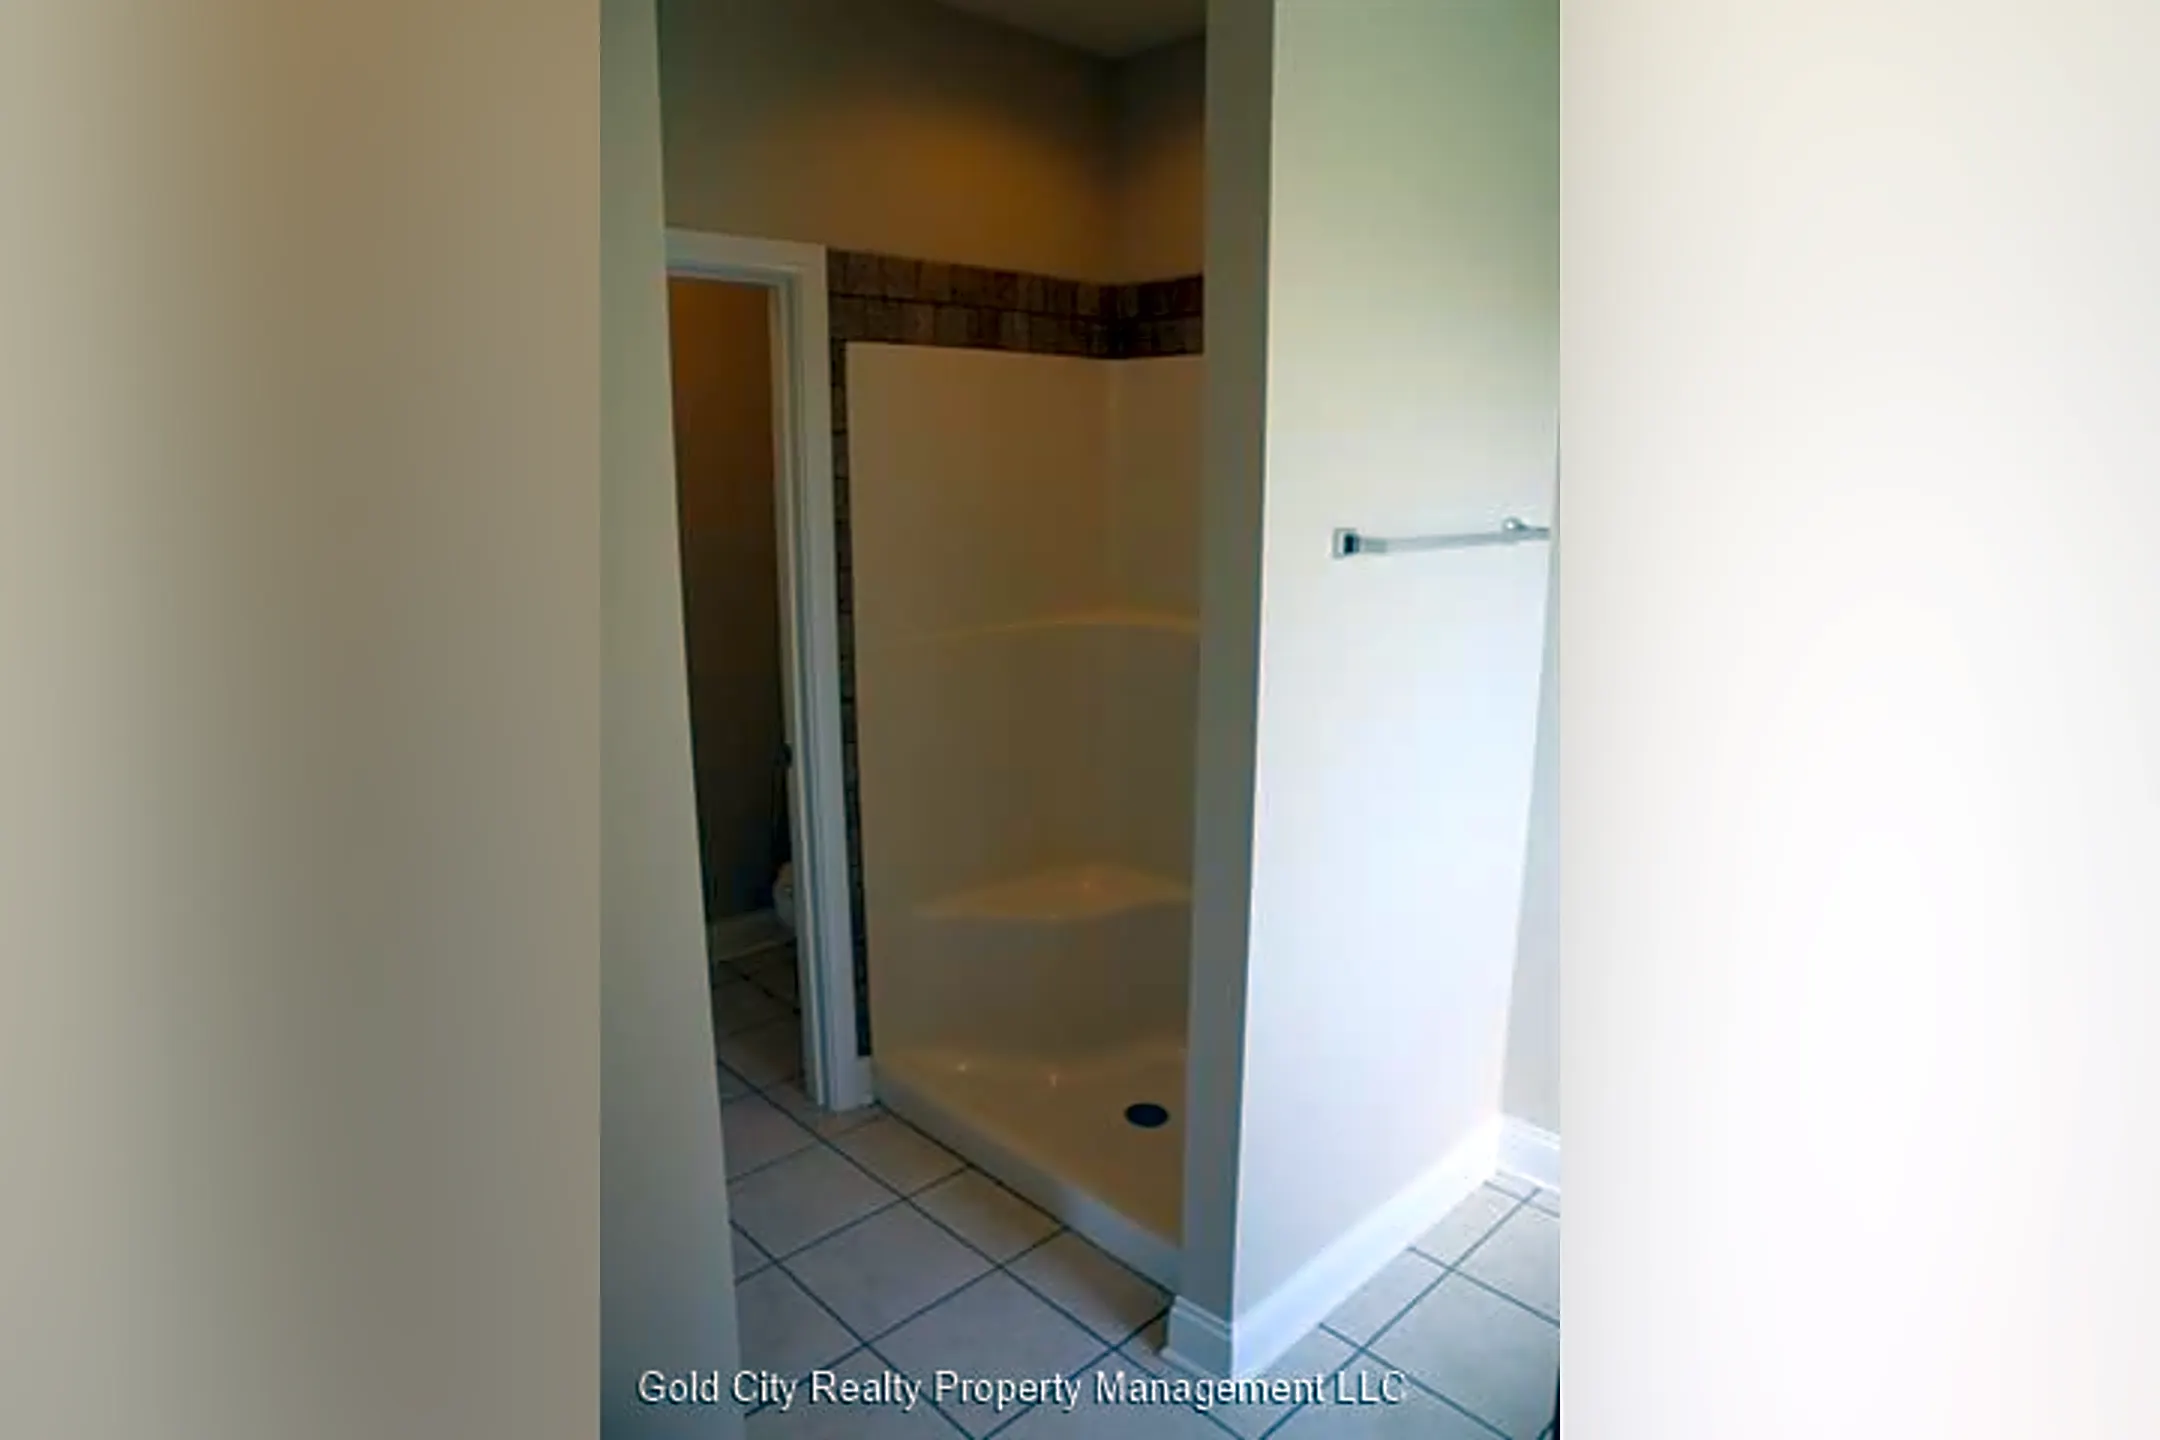 Bathroom - 422 Cabernet Dr - Vine Grove, KY